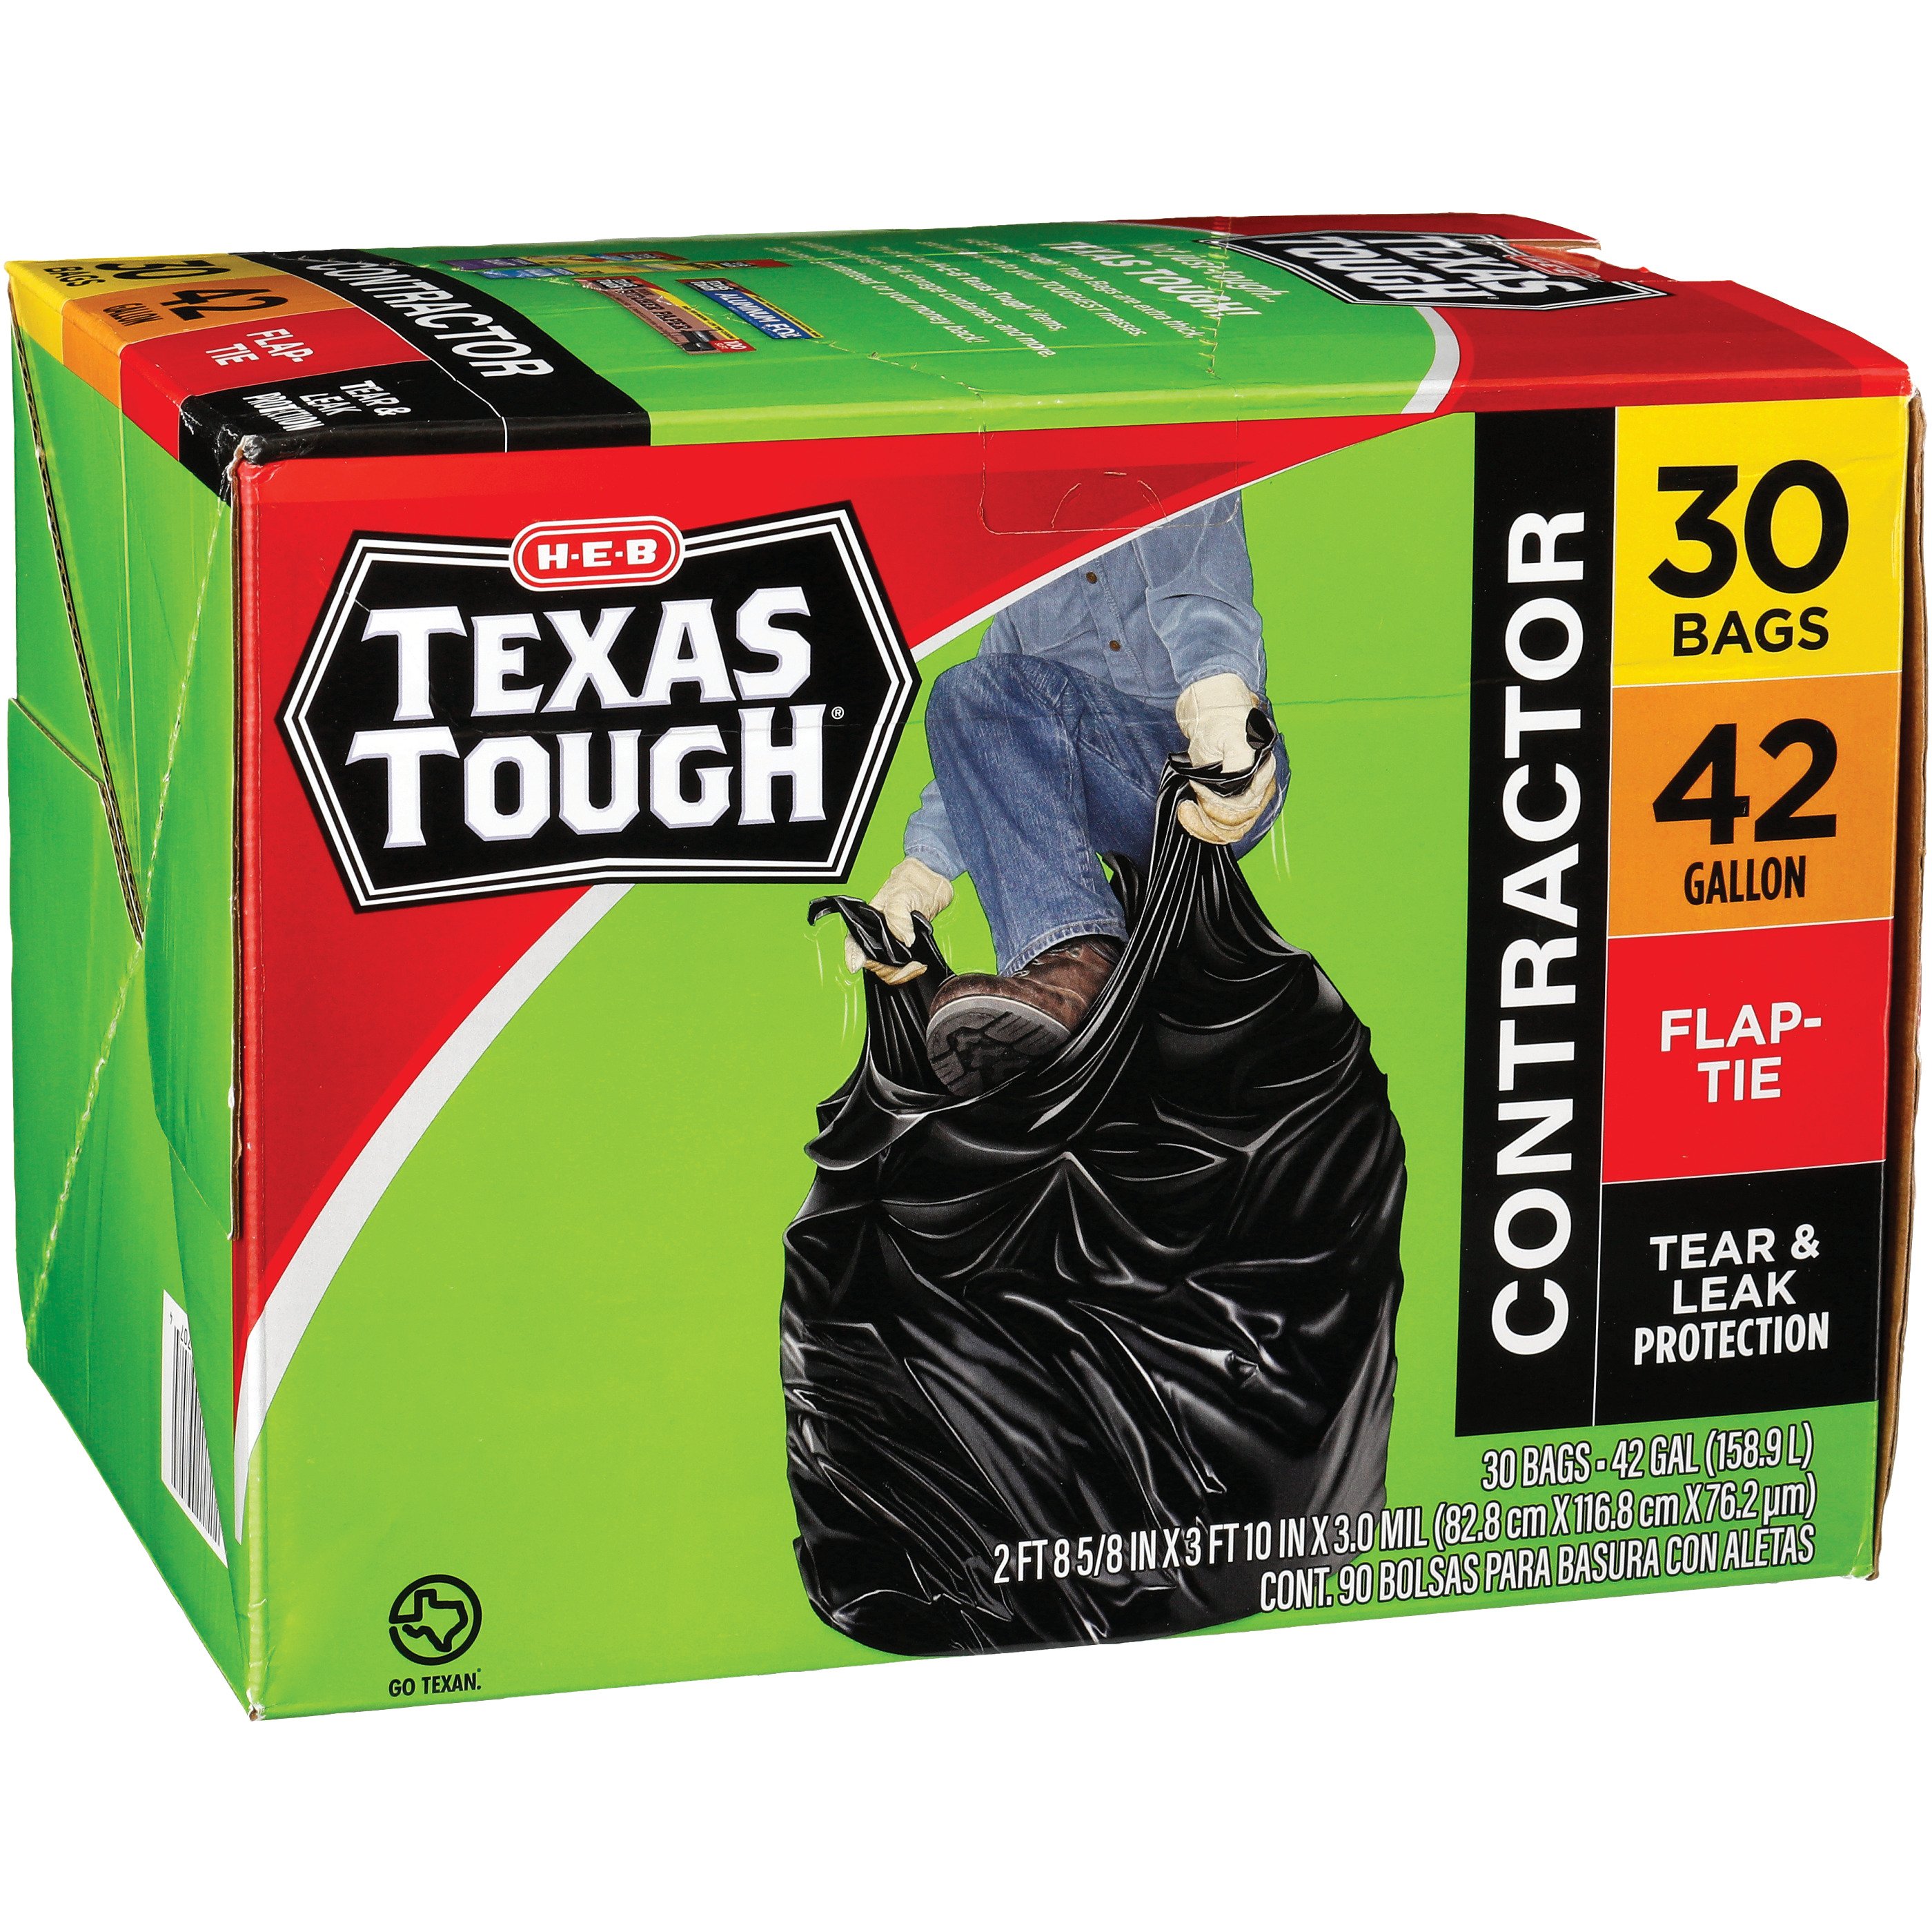 H-E-B Texas Tough Contractor Trash Bags, 42 Gallon - Shop Trash Bags at  H-E-B